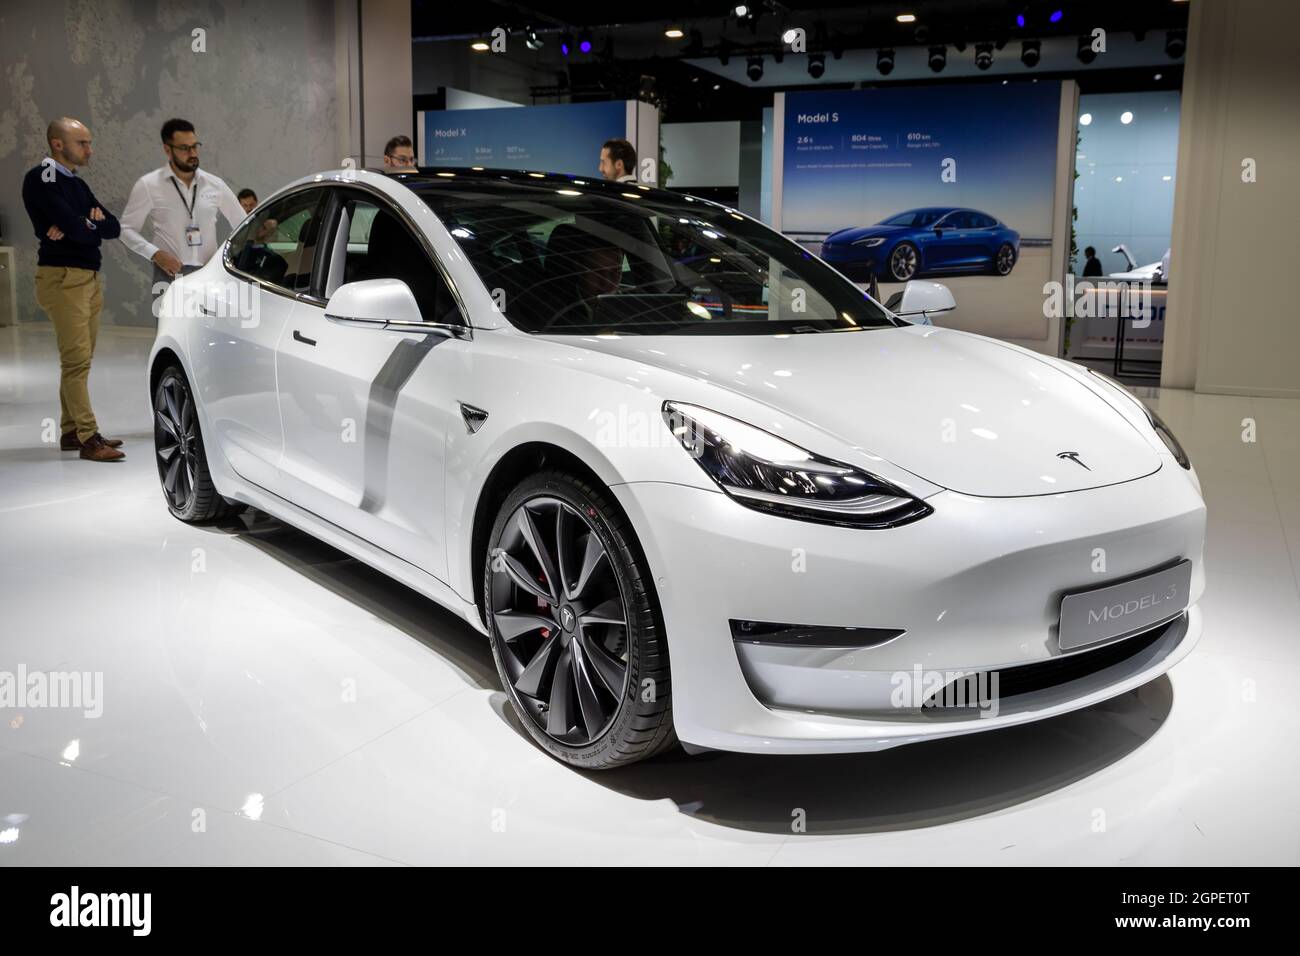 Il nuovo modello di Tesla Model 3 è mostrato al Motor Show Autosalon 2020. Bruxelles, Belgio - 9 gennaio 2020. Foto Stock